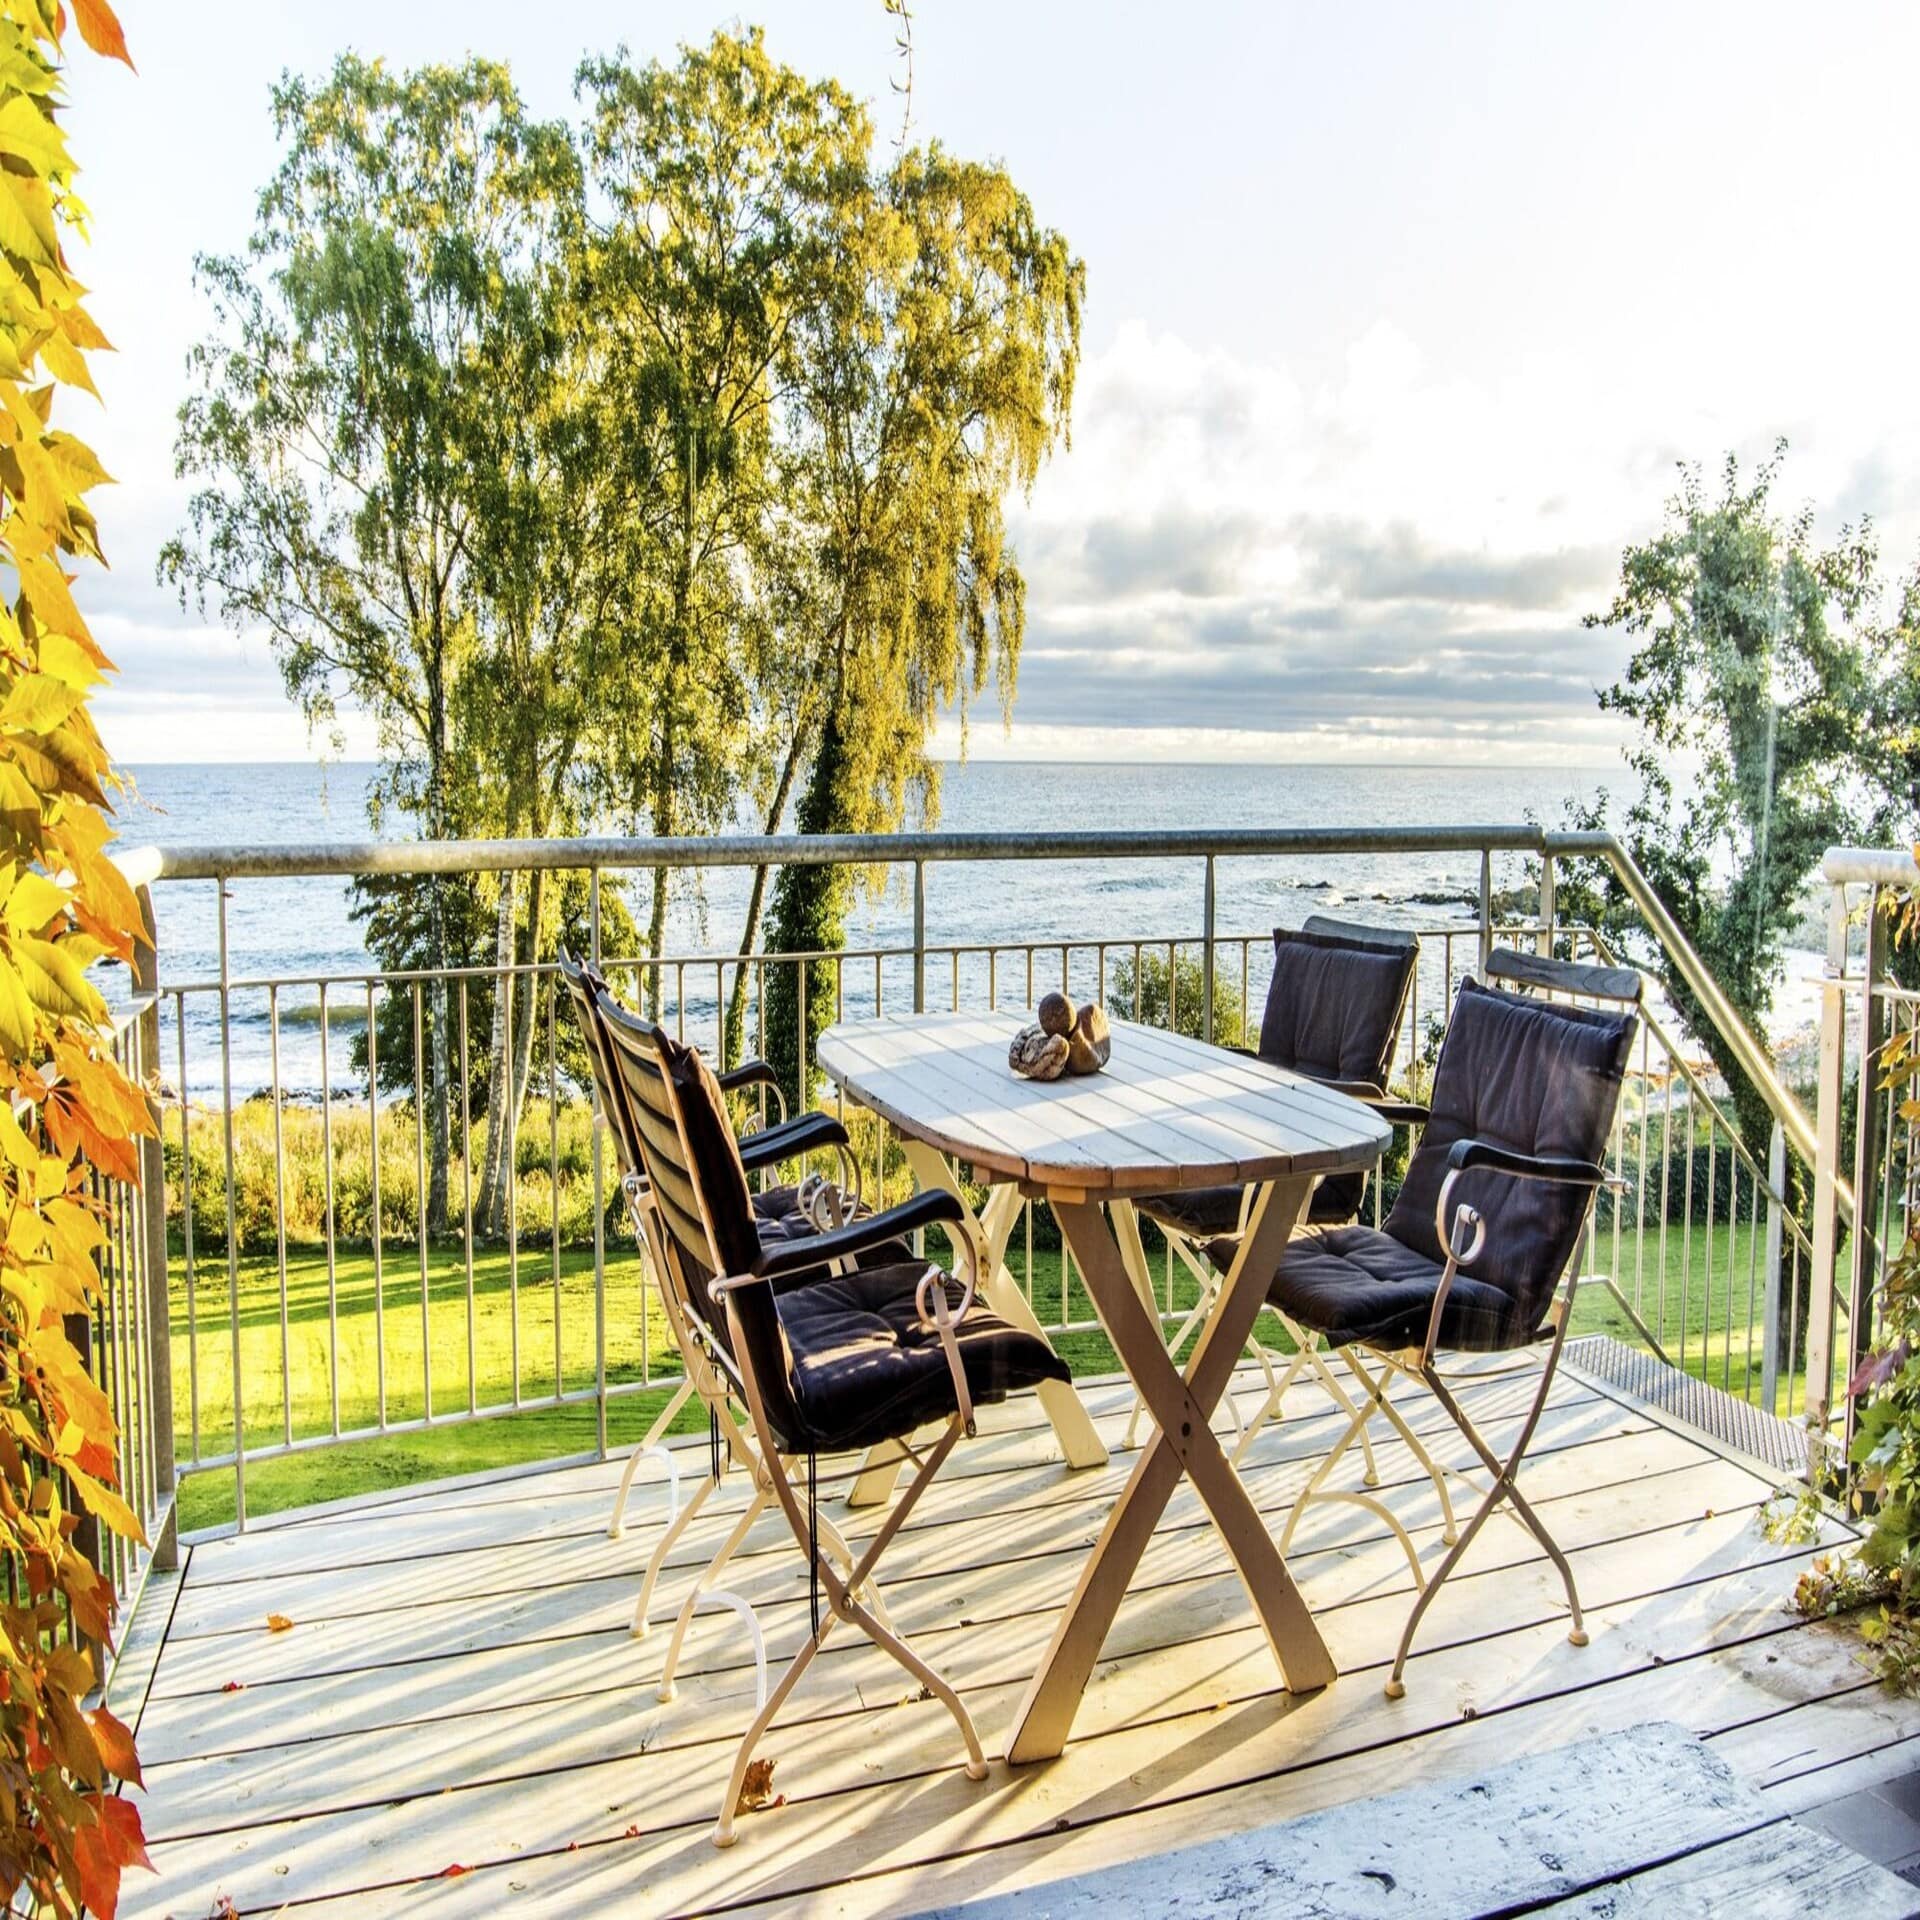 Terrasse mit Tisch und 4 Stühlen in einem Garten direkt am Meer mit Blick auf das Meer. 